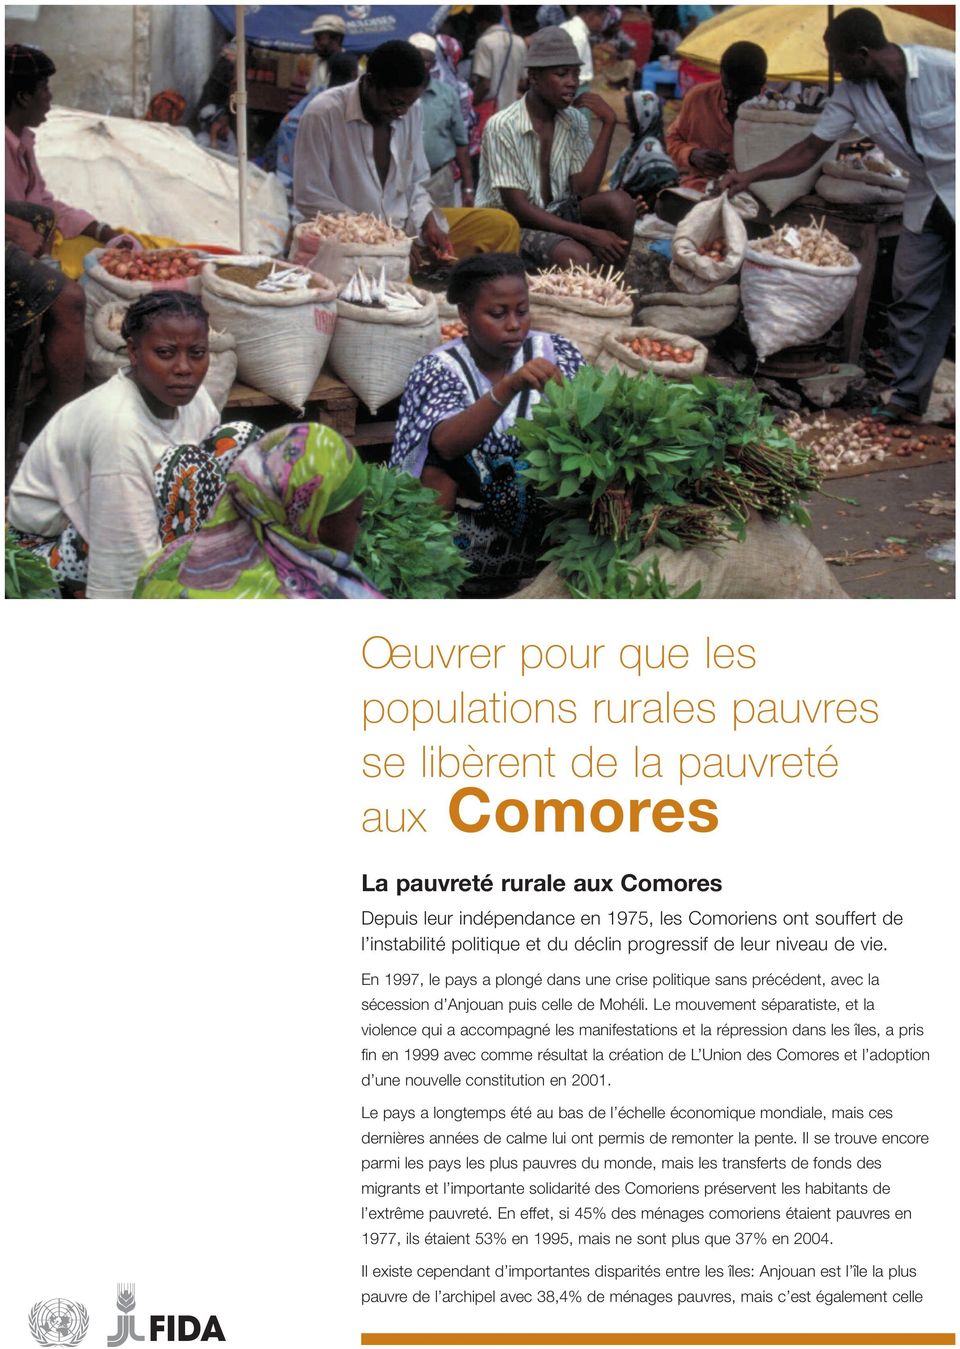 Le mouvement séparatiste, et la violence qui a accompagné les manifestations et la répression dans les îles, a pris fin en 1999 avec comme résultat la création de L Union des Comores et l adoption d